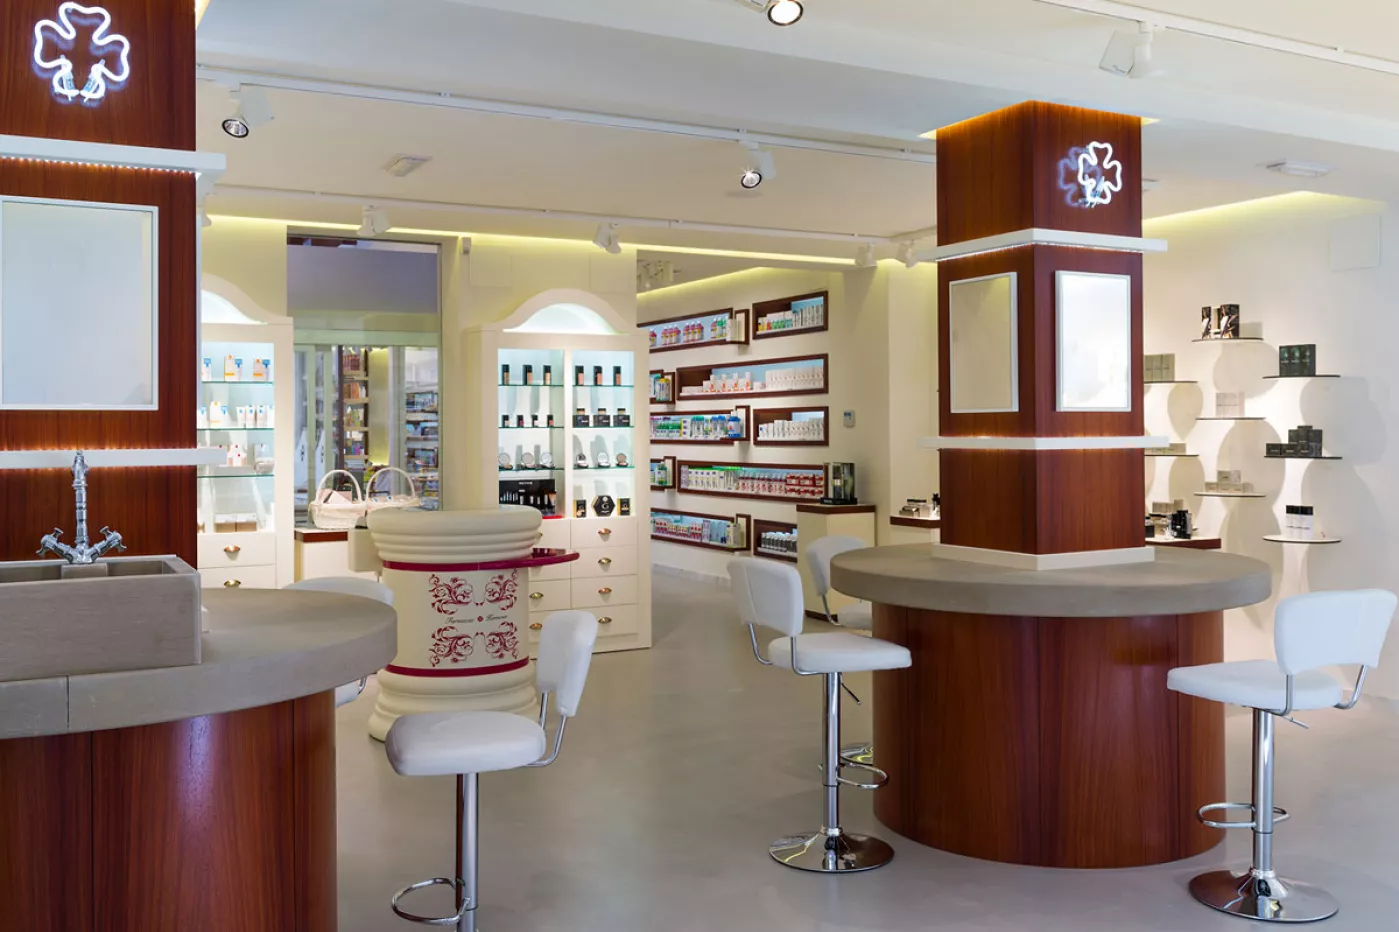 Farmacia Hermosa (Mancha Real, Jaén) fue uno de los proyectos premiados en los ‘International Store Design Awards’ de Nueva York en 2013. Fotografía IKUO MARUYAMA 